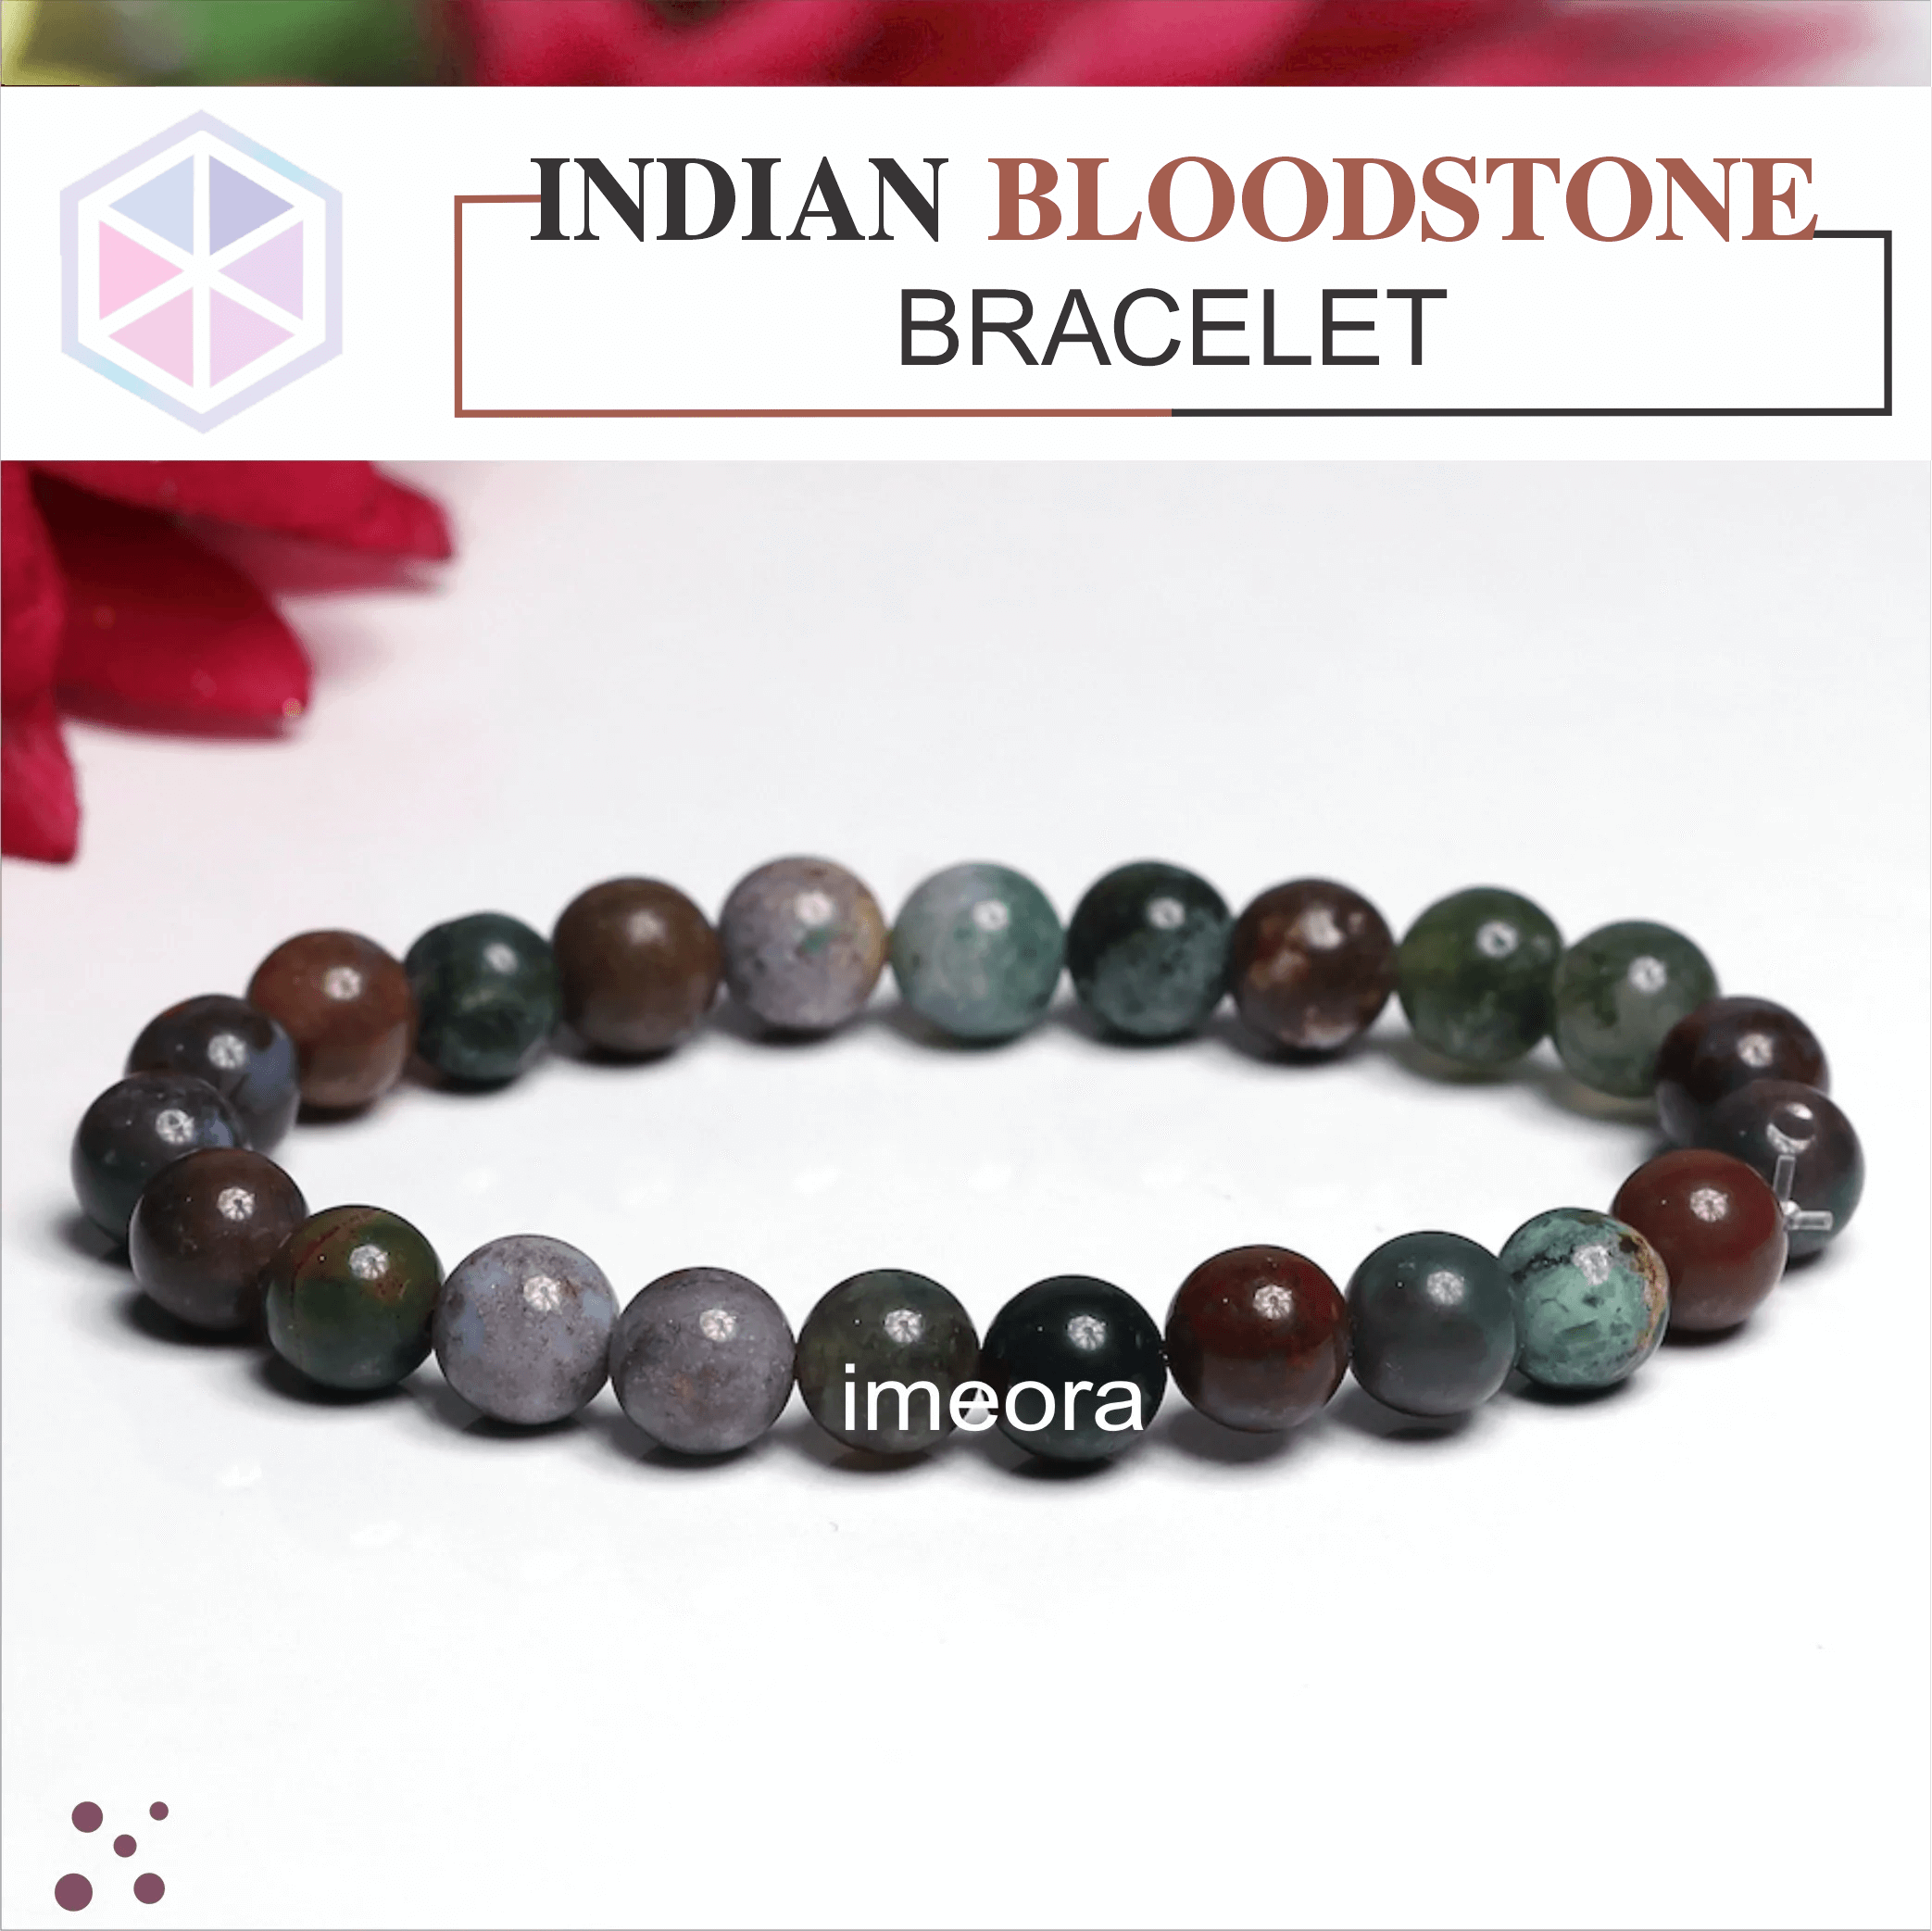 Bloodstone Bracelet - Things That Rock